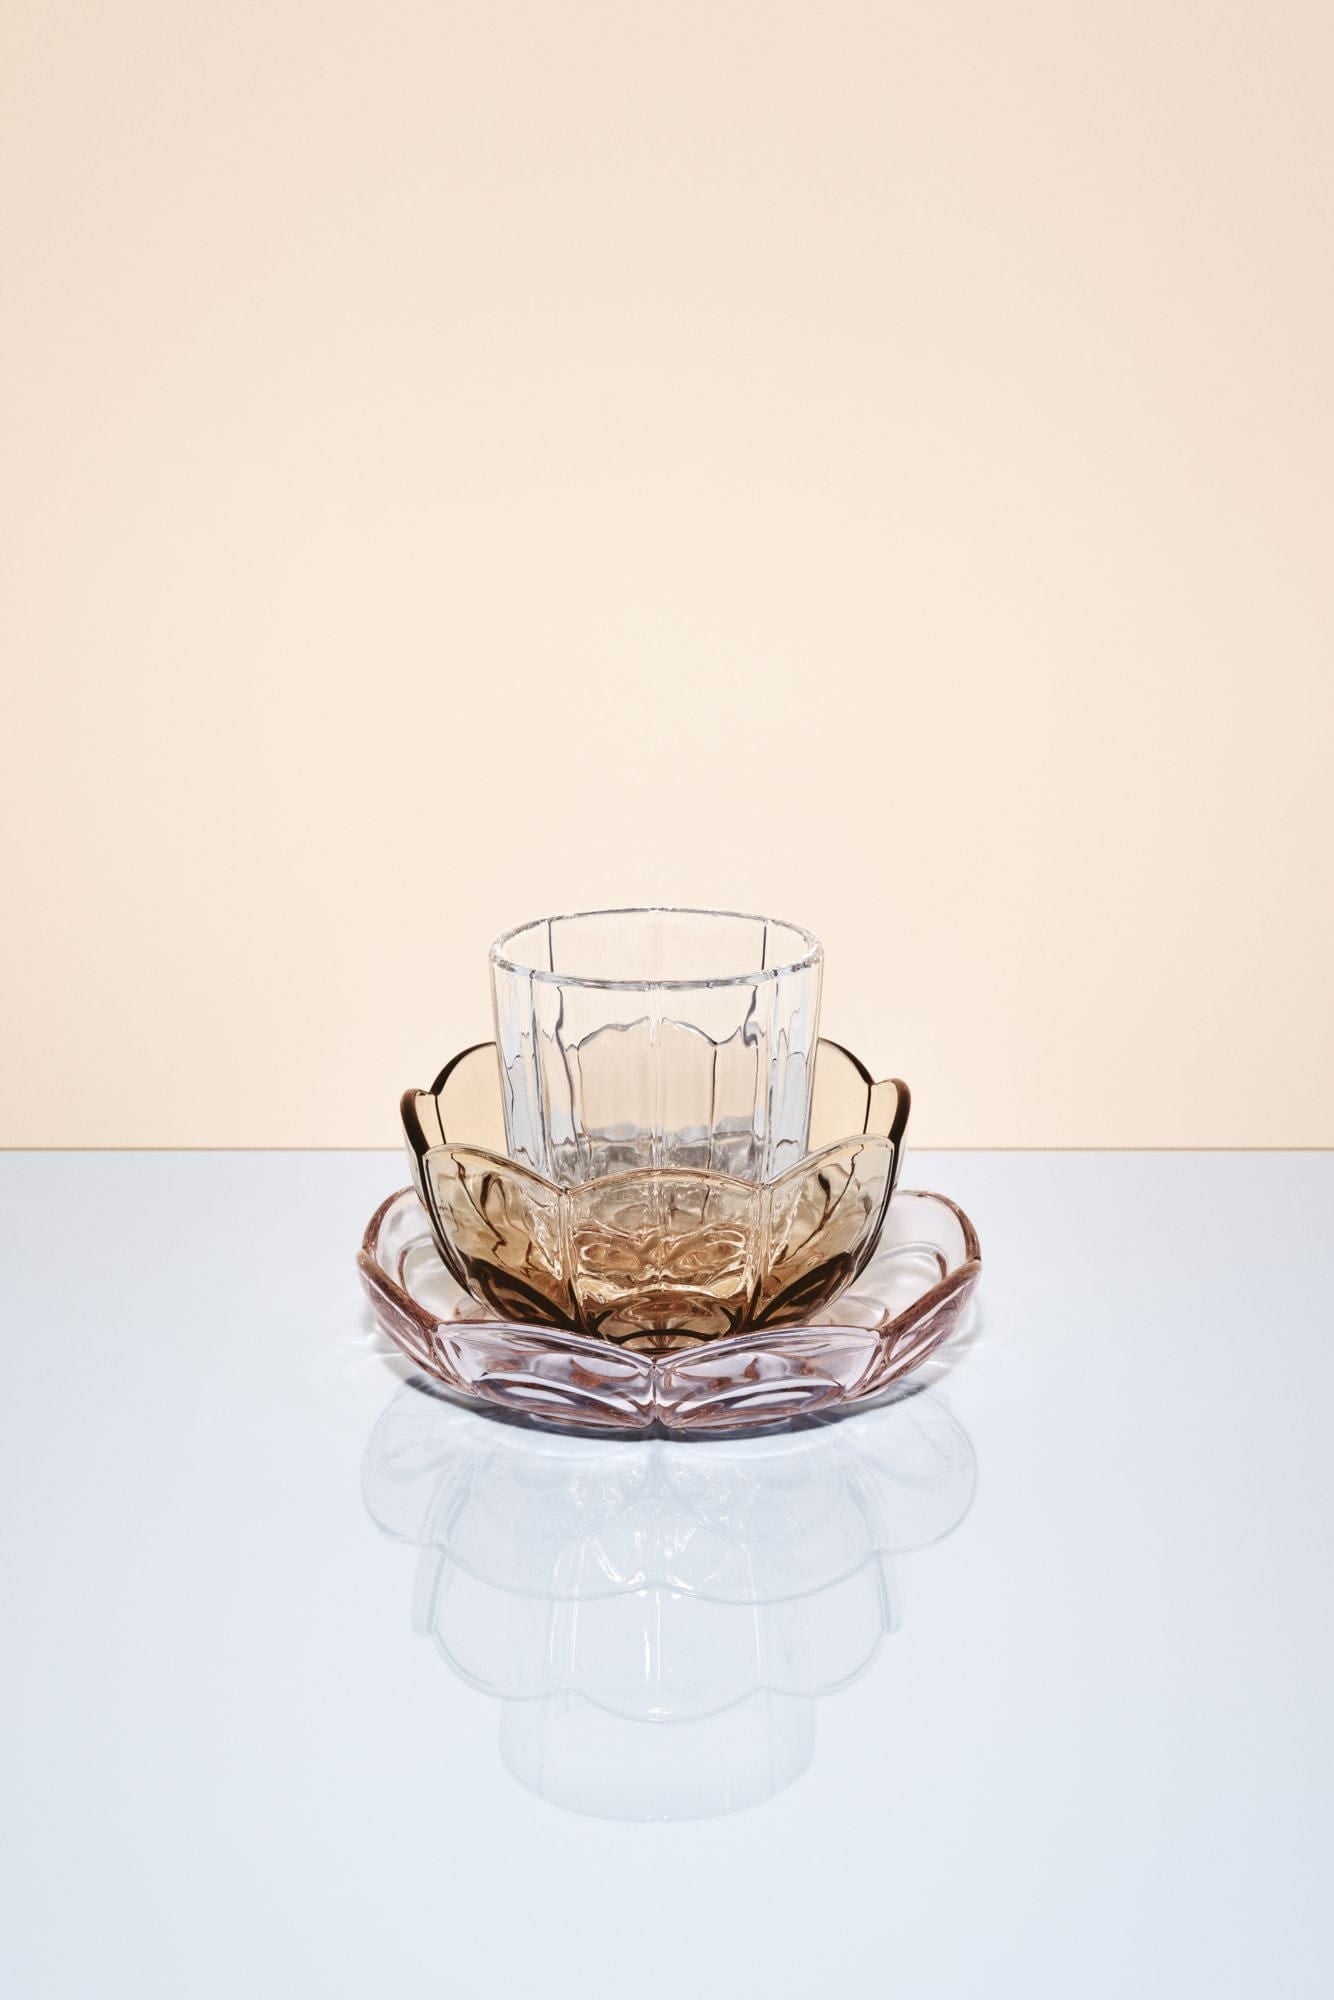 Holmegaard Lily Bowl -Set von 2 Ø13 cm, braun